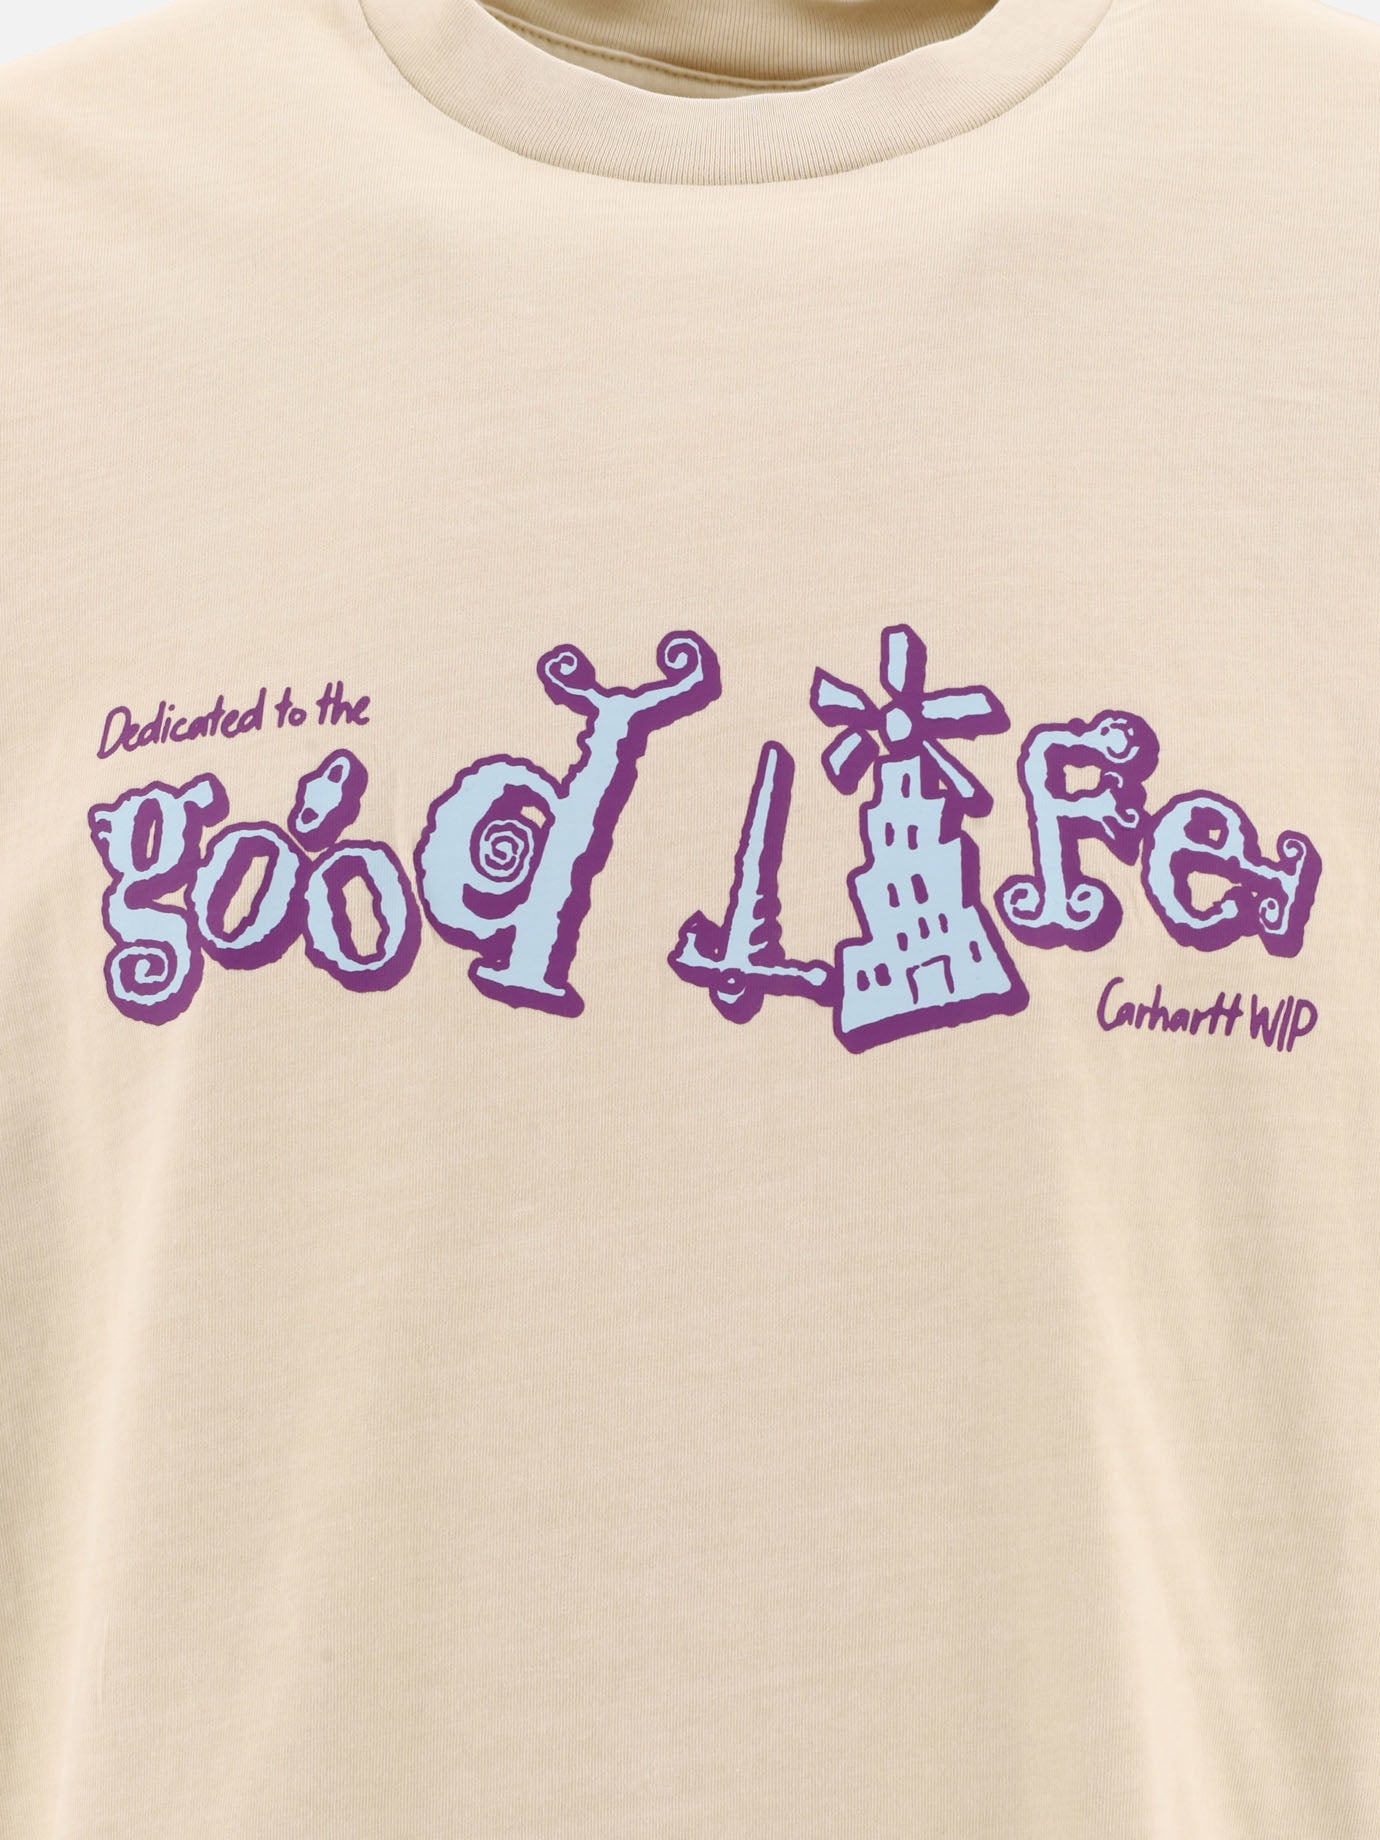 T-shirt "Life"